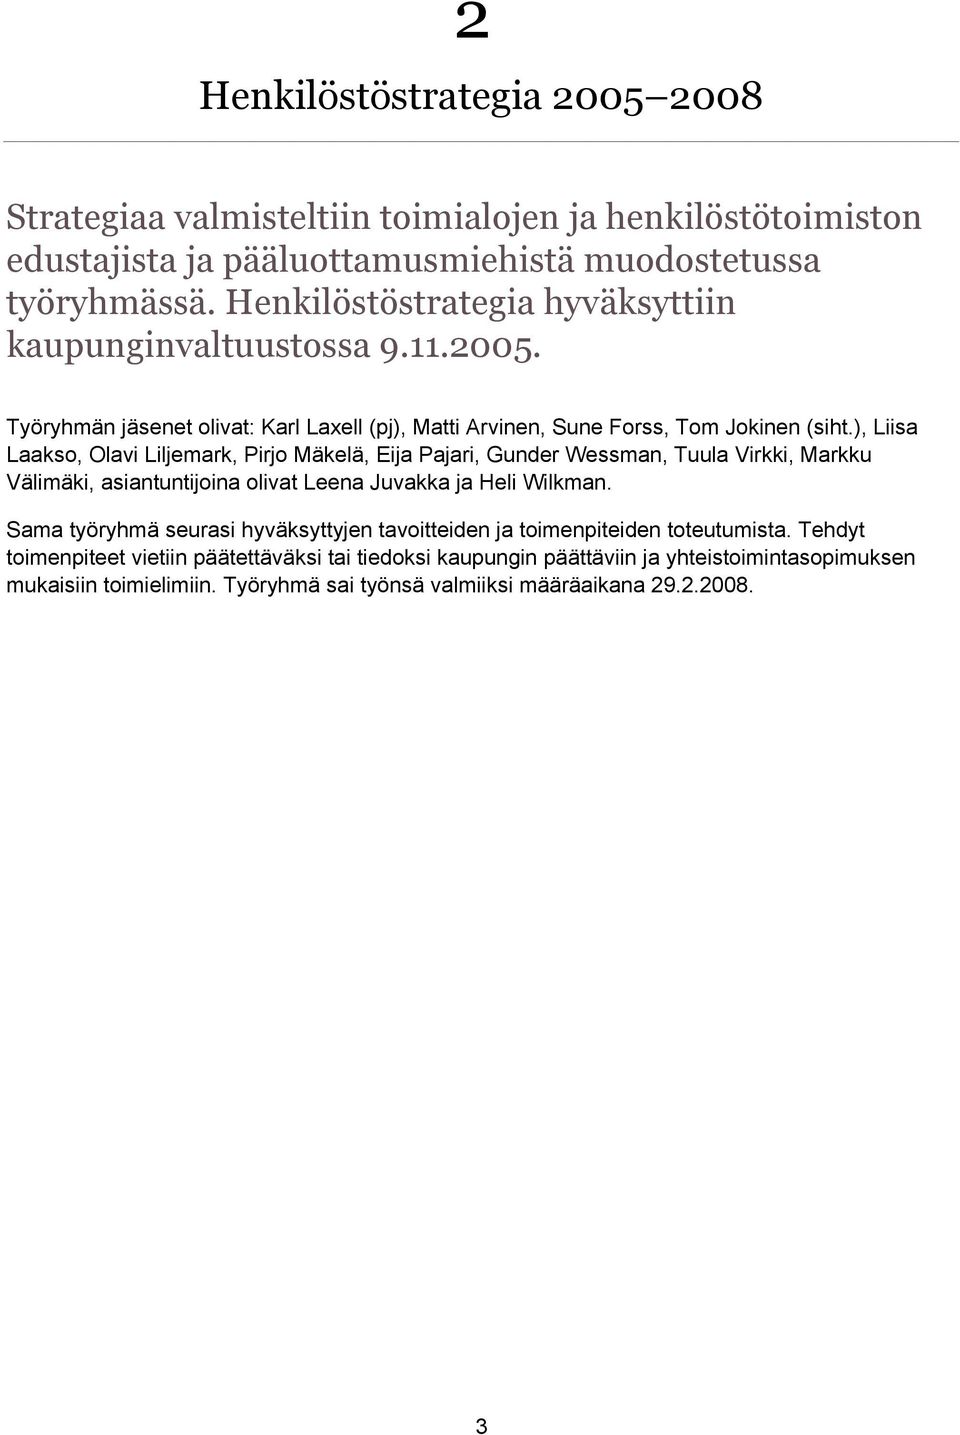 ), Liisa Laakso, Olavi Liljemark, Pirjo Mäkelä, Eija Pajari, Gunder Wessman, Tuula Virkki, Markku Välimäki, asiantuntijoina olivat Leena Juvakka ja Heli Wilkman.